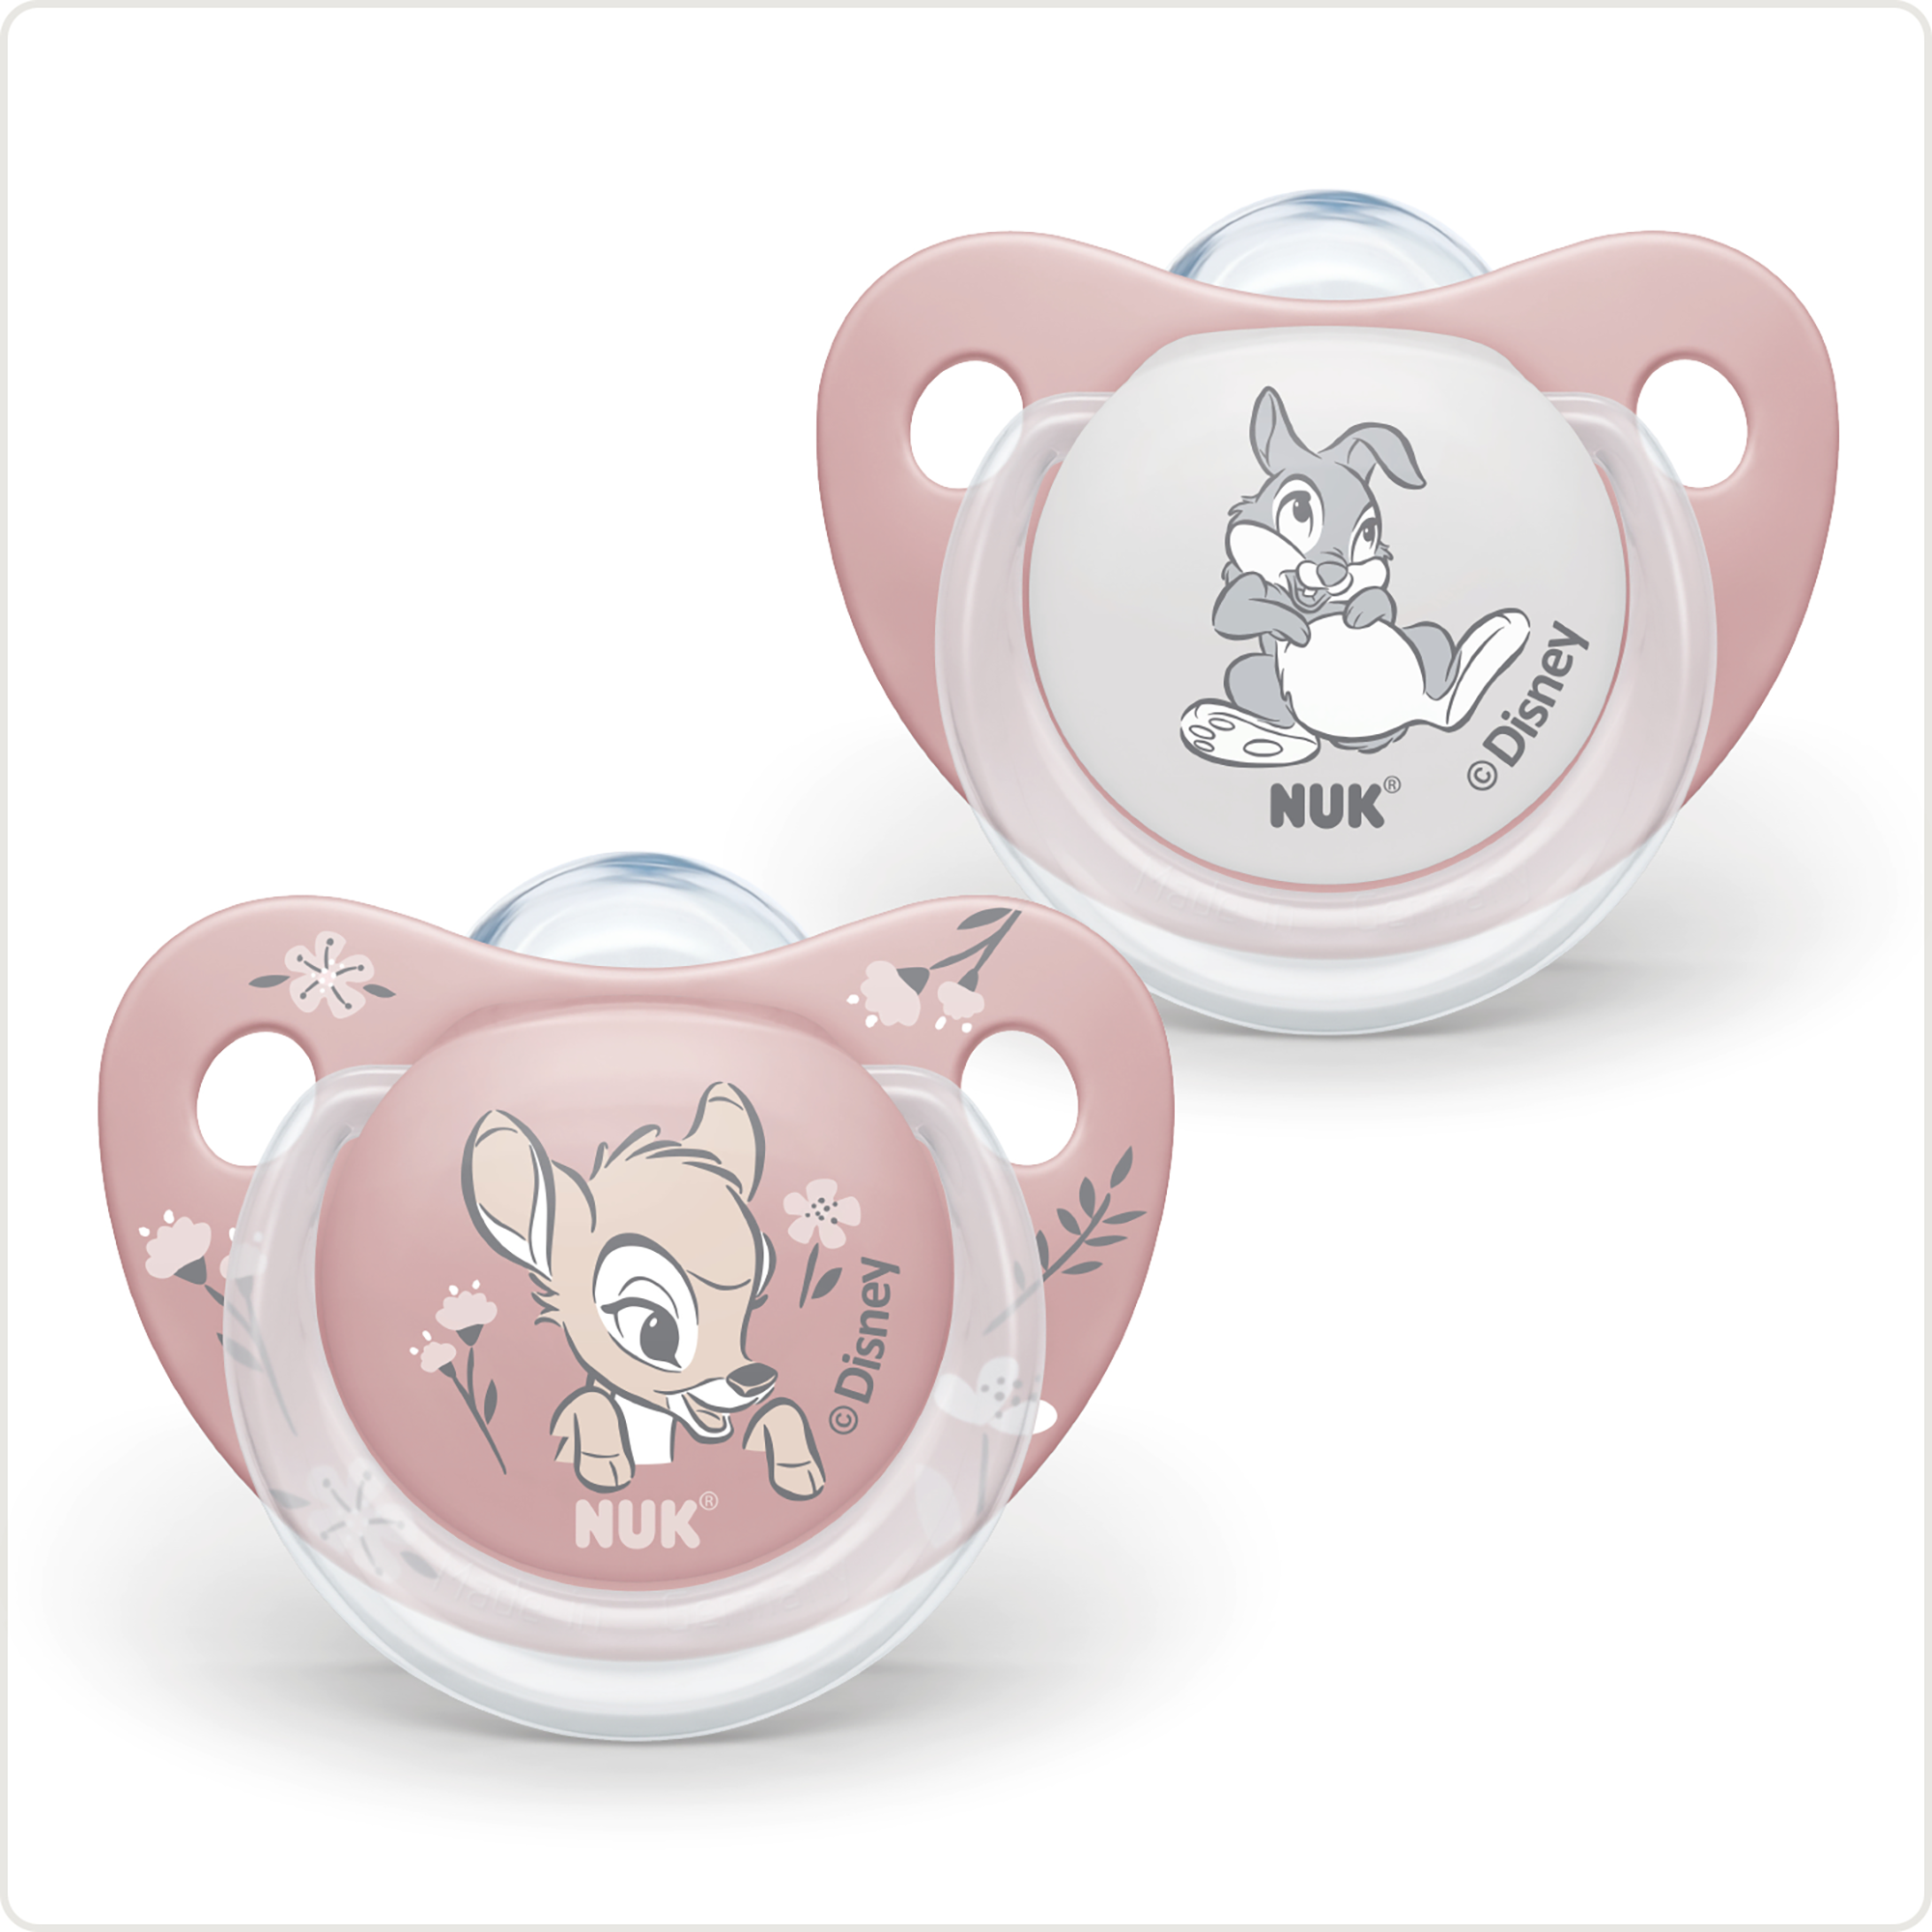 Beruhigungssauger Disney Bambi 6 - 18 Monate NUK Rosa Pink 2000583101208 1